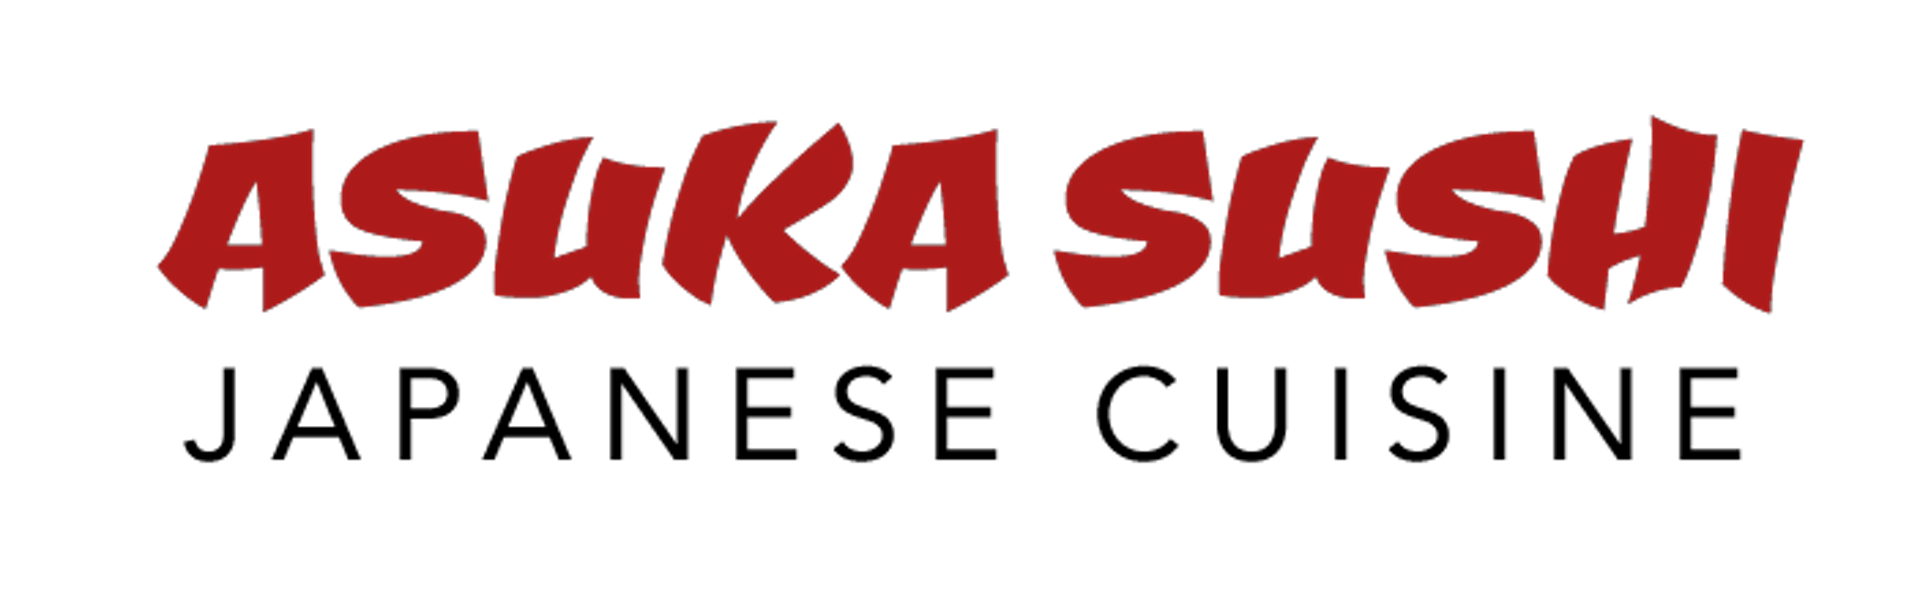 Asuka Sushi Japanese Cuisine